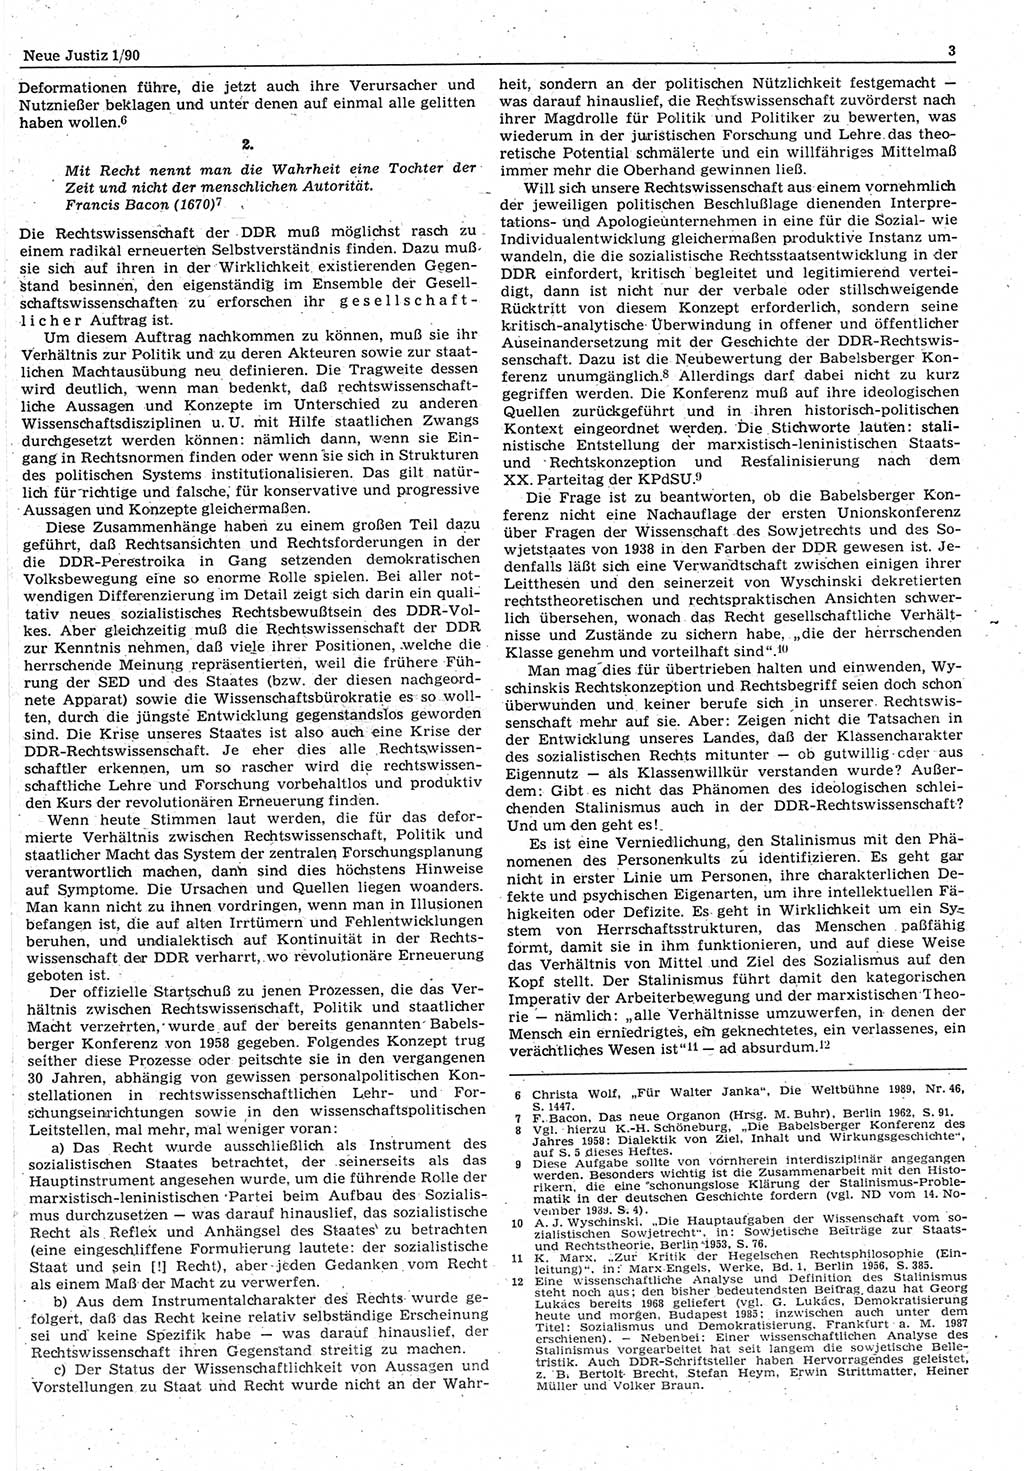 Neue Justiz (NJ), Zeitschrift für Rechtsetzung und Rechtsanwendung [Deutsche Demokratische Republik (DDR)], 44. Jahrgang 1990, Seite 3 (NJ DDR 1990, S. 3)